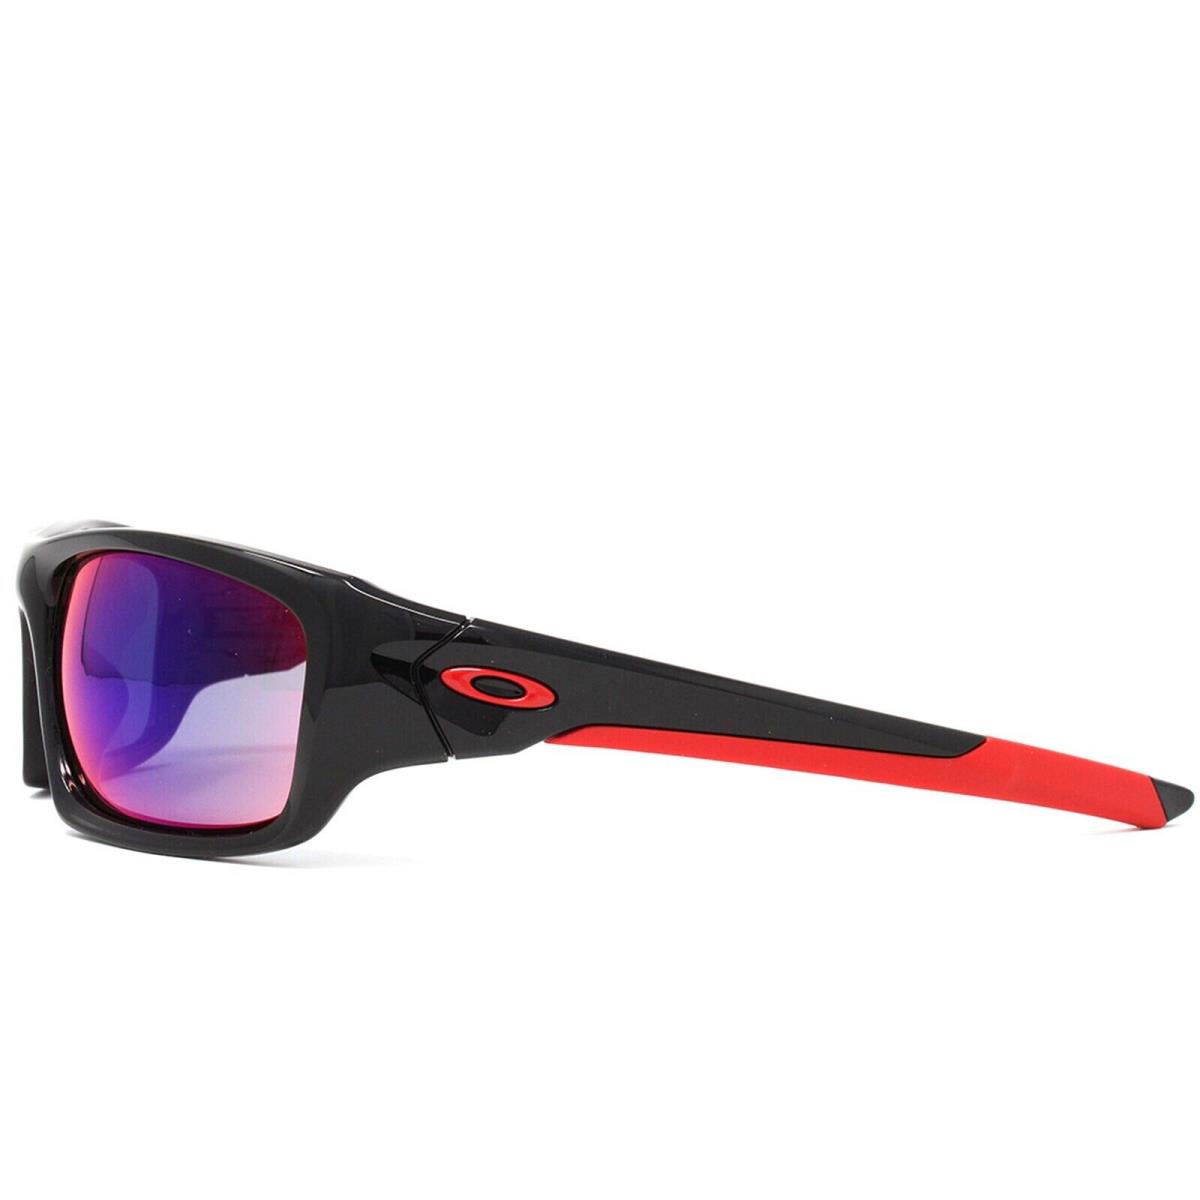 OO9236-02 Oakley Valve Lens/60 Bridge/16 Temple/133 Sunglasses - Frame: Black, Lens: Red